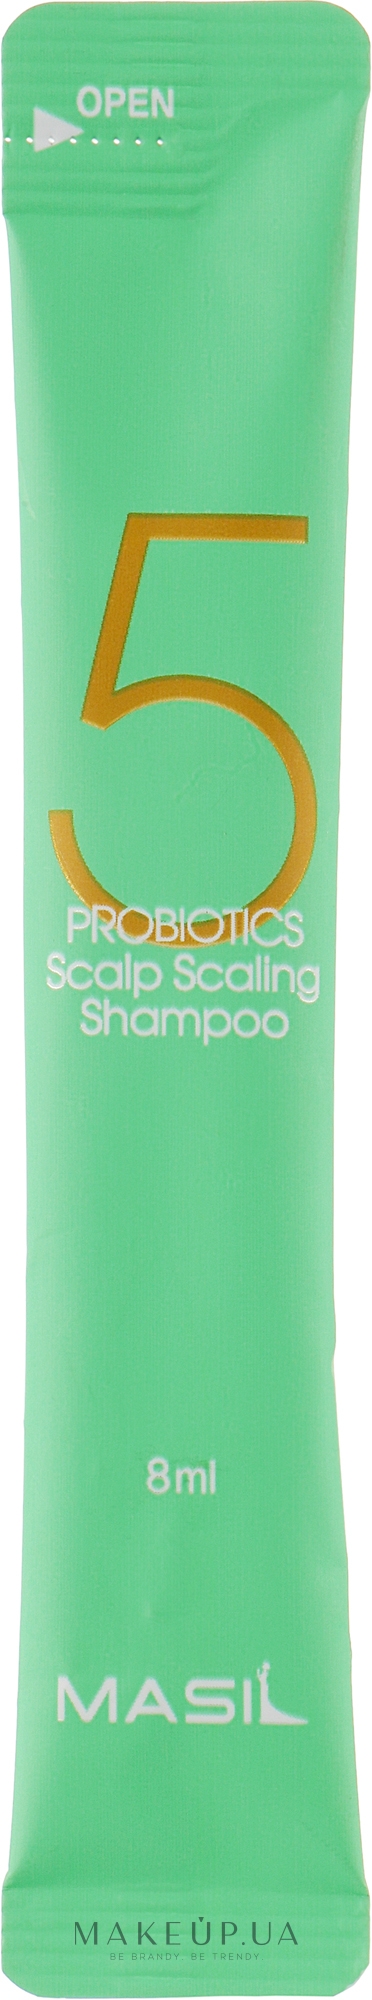 Шампунь для глибокого очищення шкіри голови - Masil 5 Probiotics Scalp Scaling Shampoo (пробник) — фото 8ml